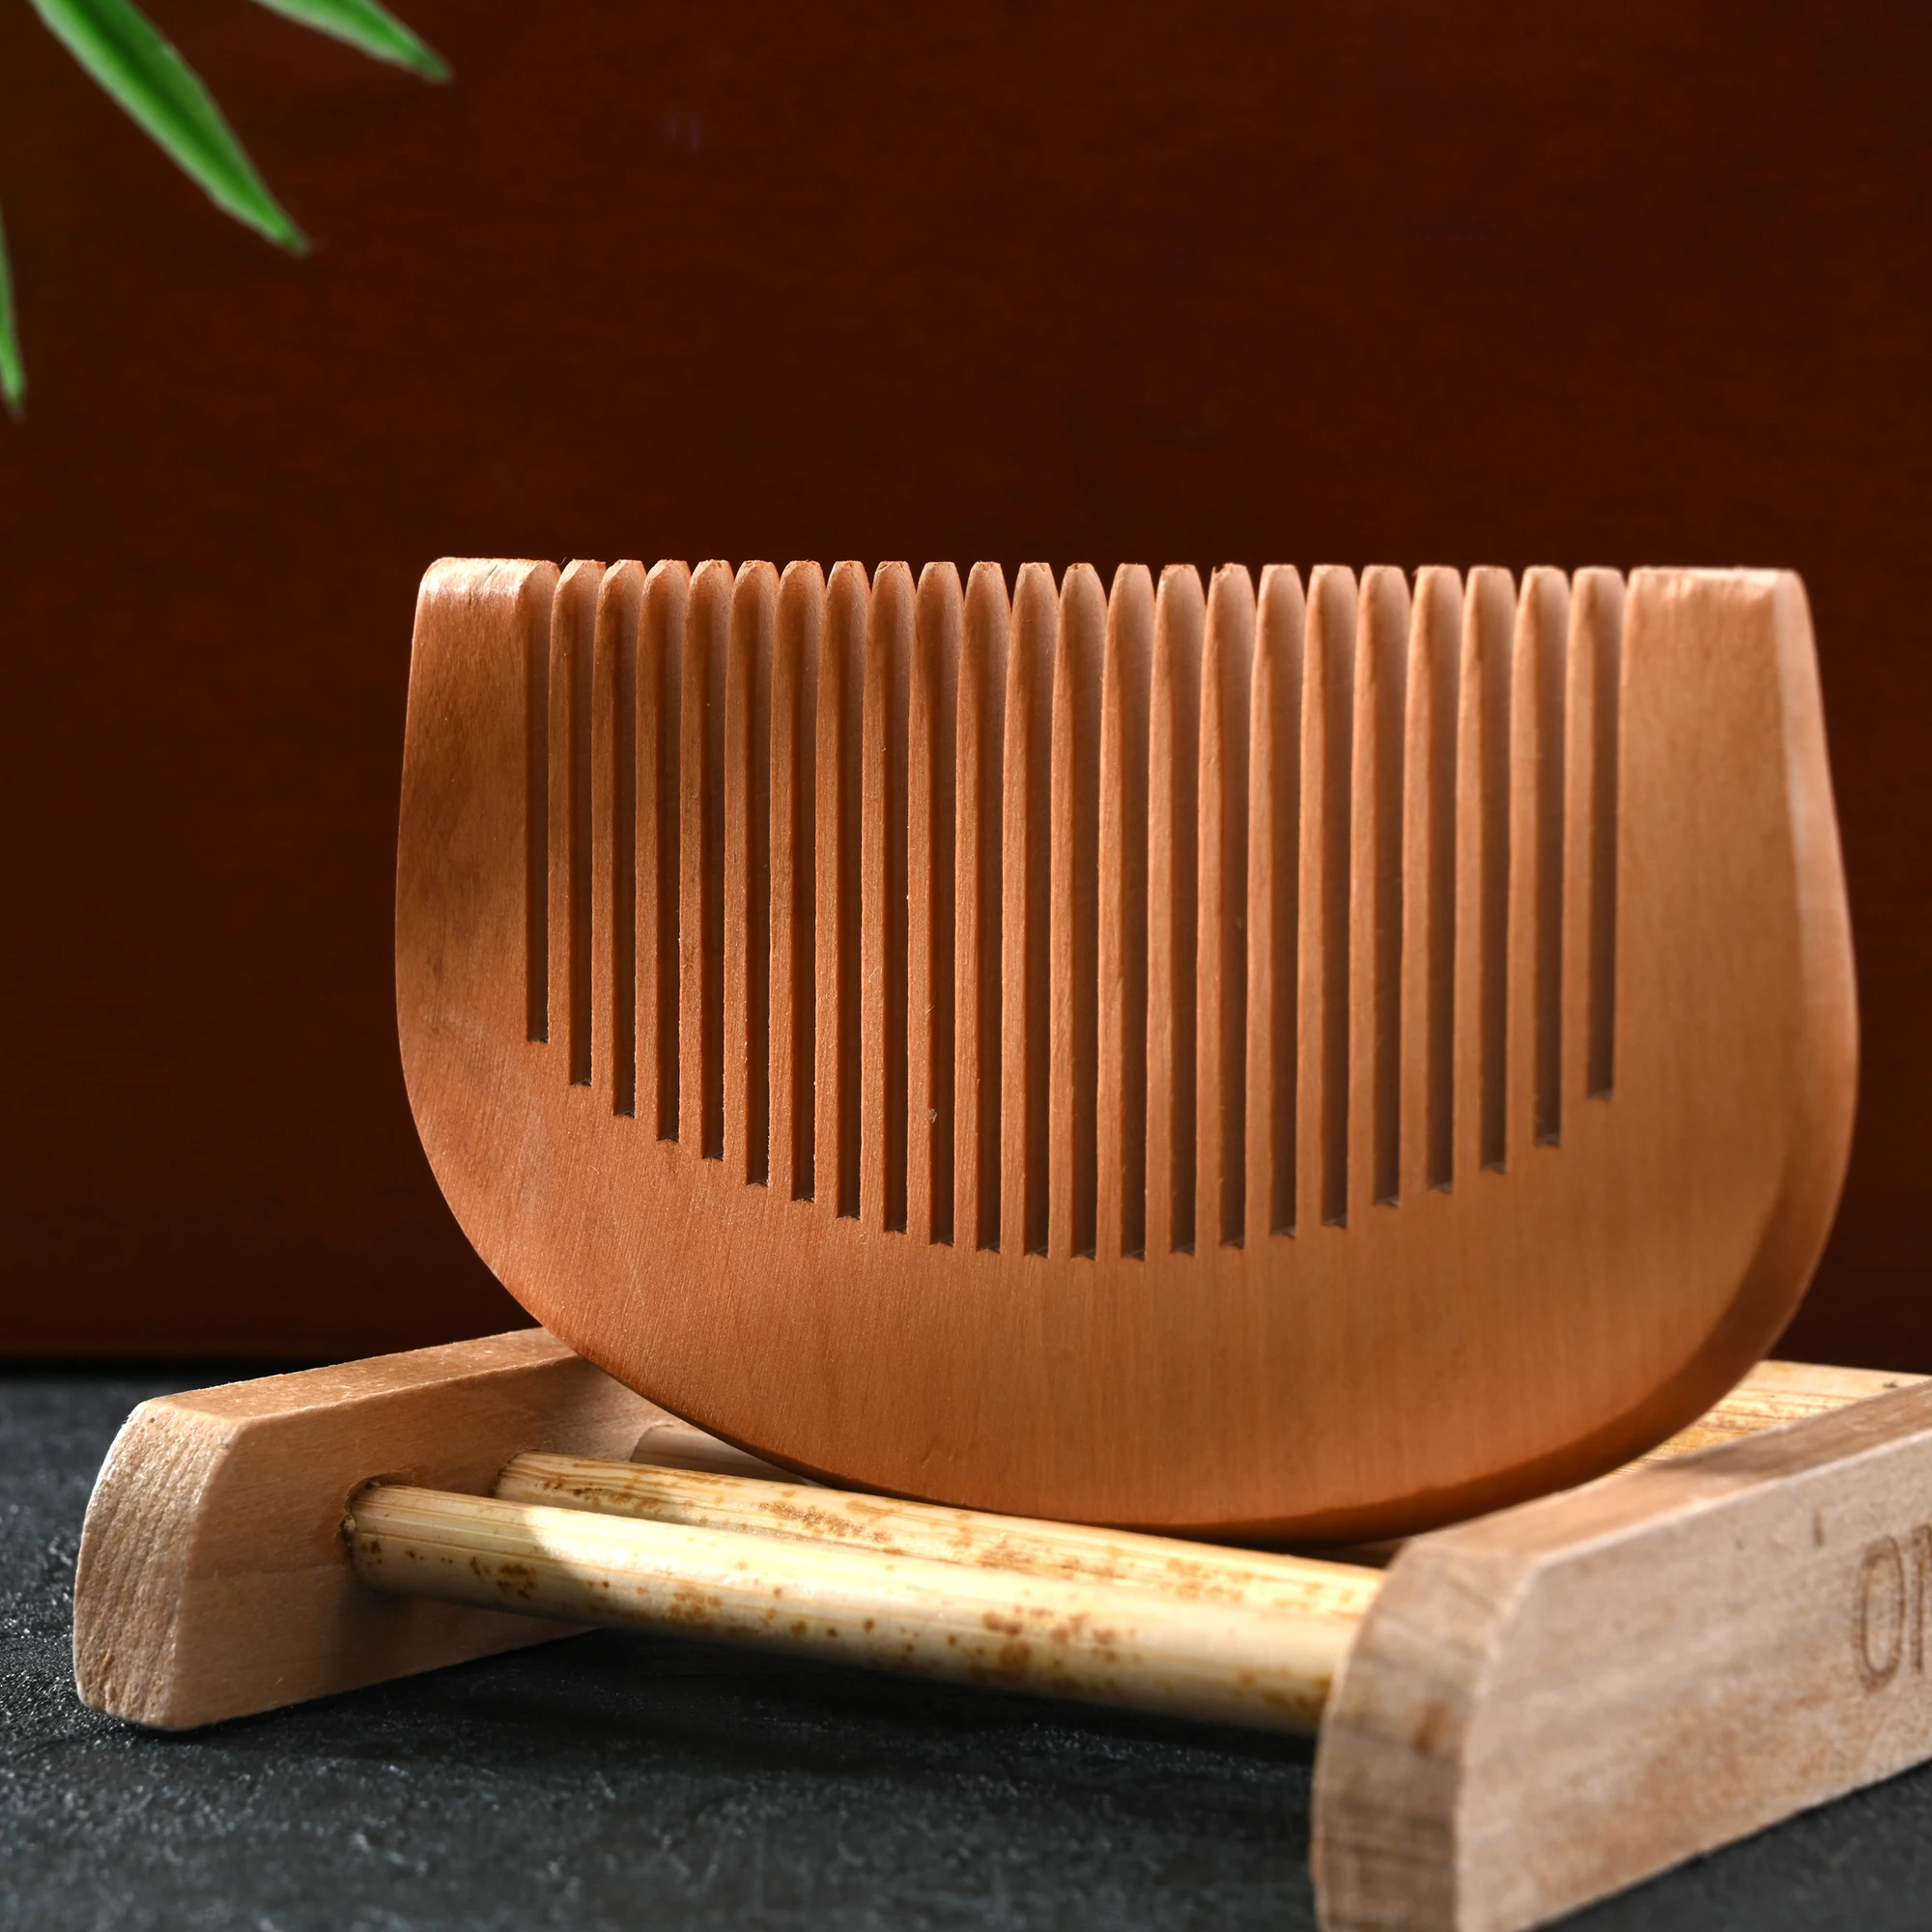 Peine de madera de melocotón Natural grabado para el cabello, cepillo de piojos, herramienta de Peine de barba antiestática, accesorios para el cabello, moda